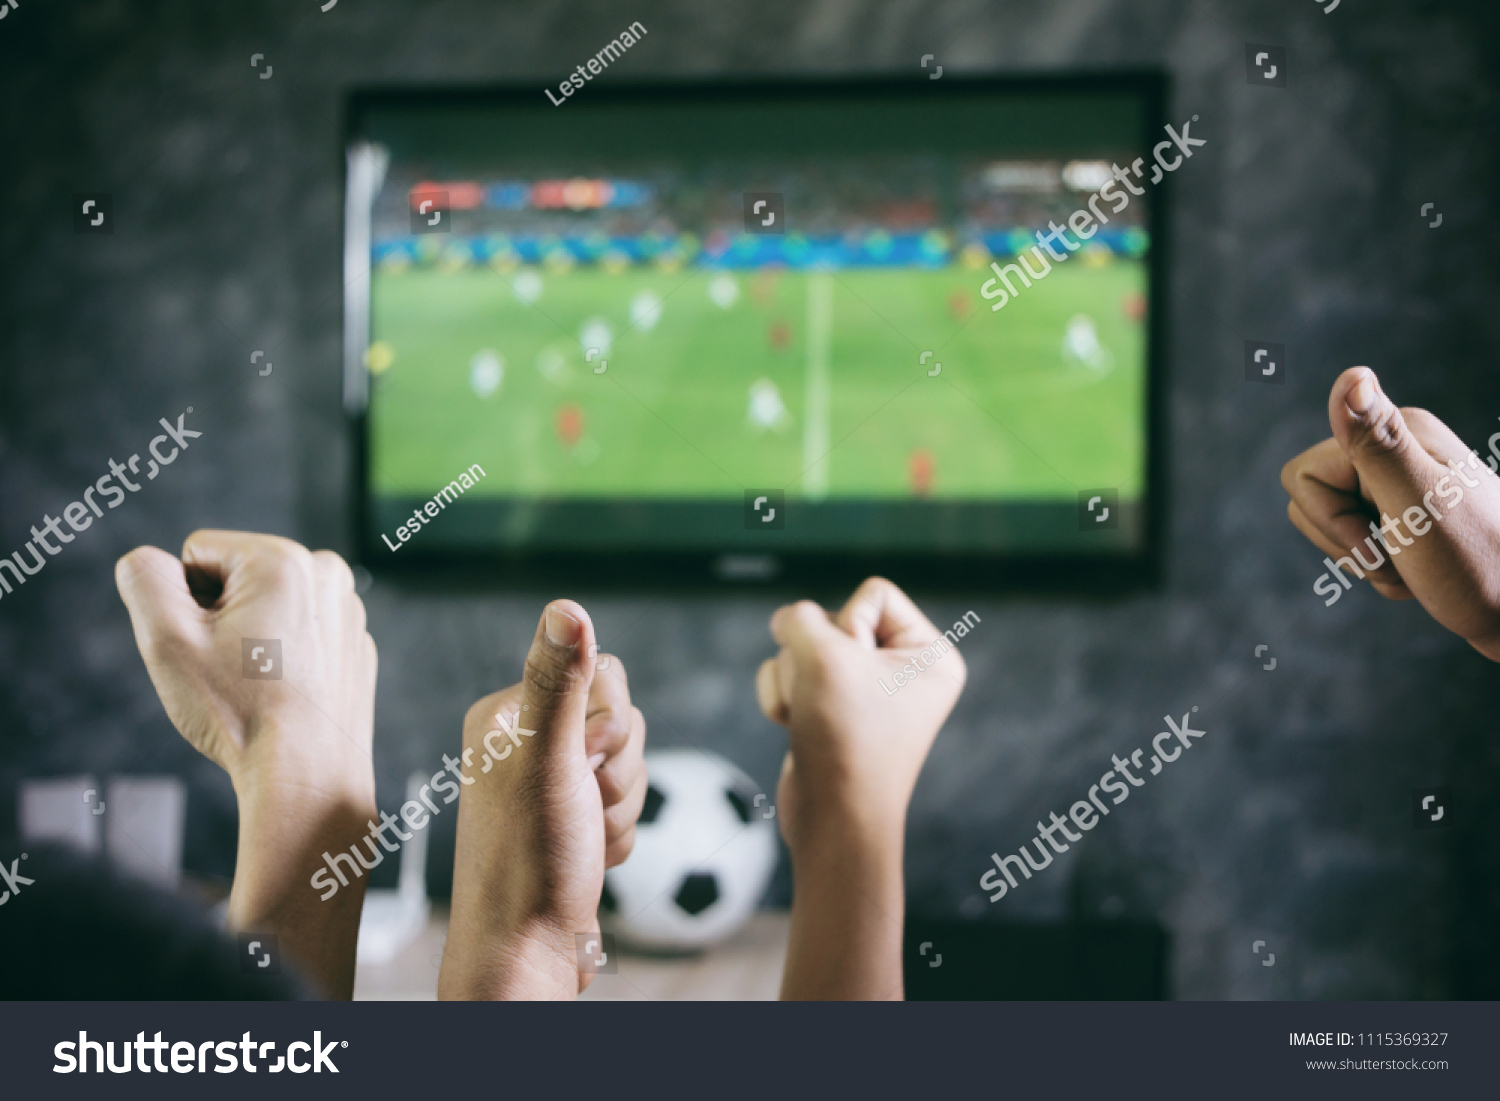 Sport do you watch on tv. Футбол по телевизору. Телевизор футбол. Футбол по телевизору семья. Телевизор с футболом картинка.